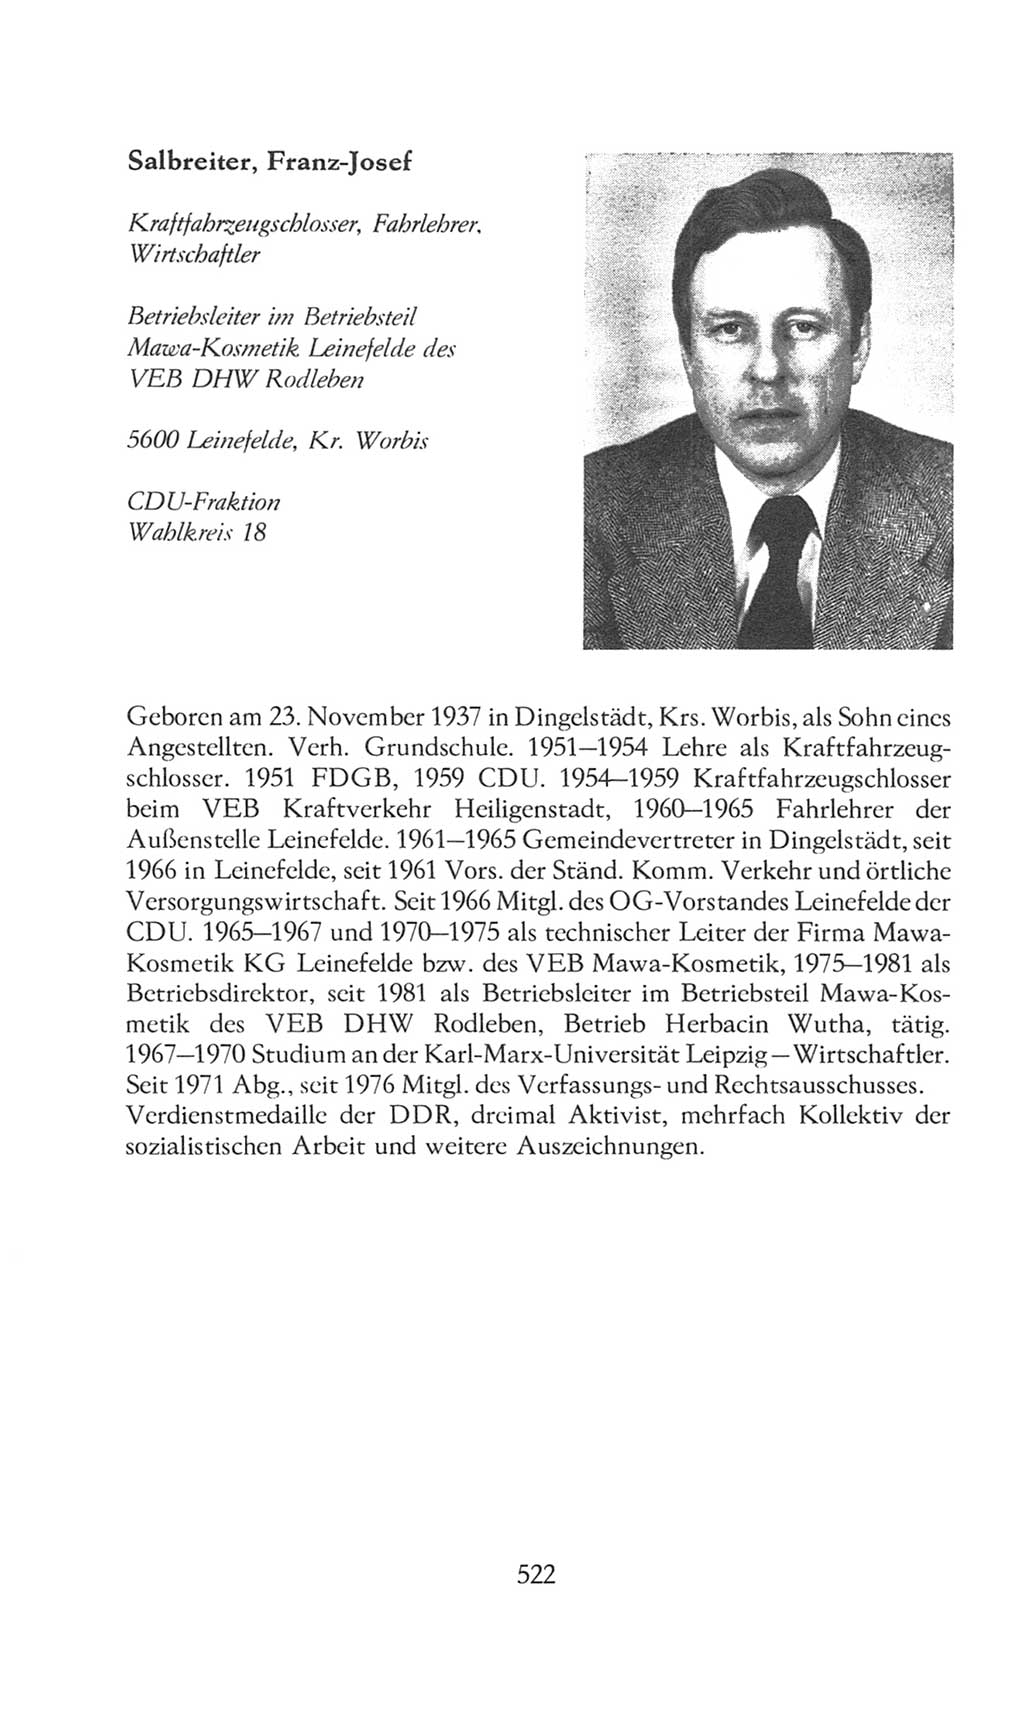 Volkskammer (VK) der Deutschen Demokratischen Republik (DDR), 8. Wahlperiode 1981-1986, Seite 522 (VK. DDR 8. WP. 1981-1986, S. 522)